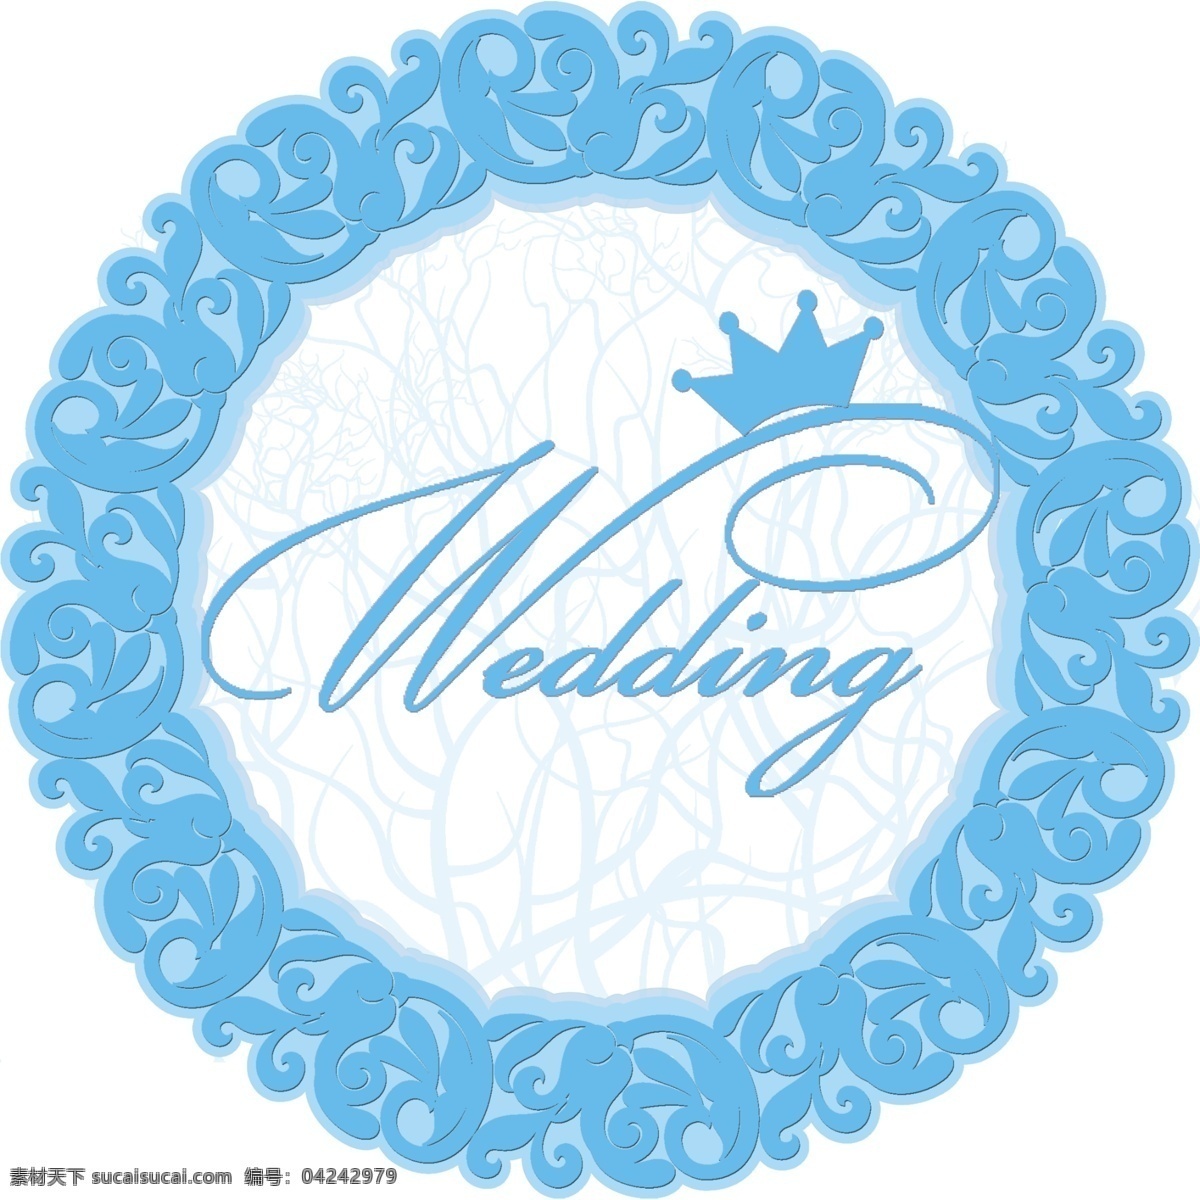 婚庆logo 婚礼主题 主题logo 婚庆主题 婚礼 圆 logo 标志图标 其他图标